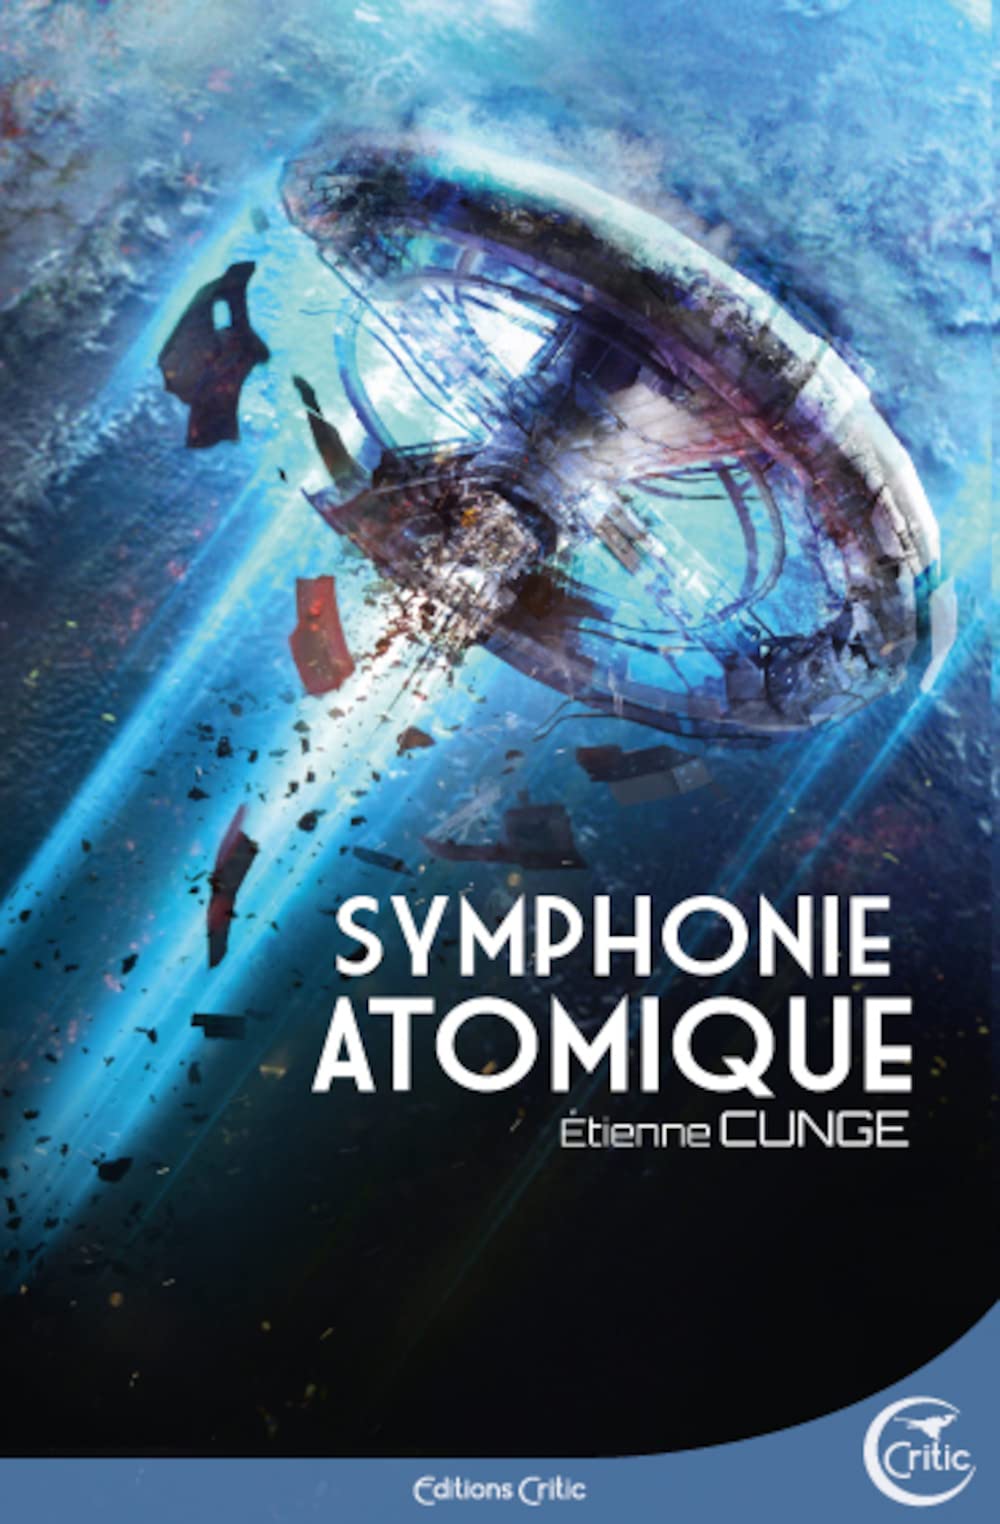 Symphonie atomique d’Etienne Cunge